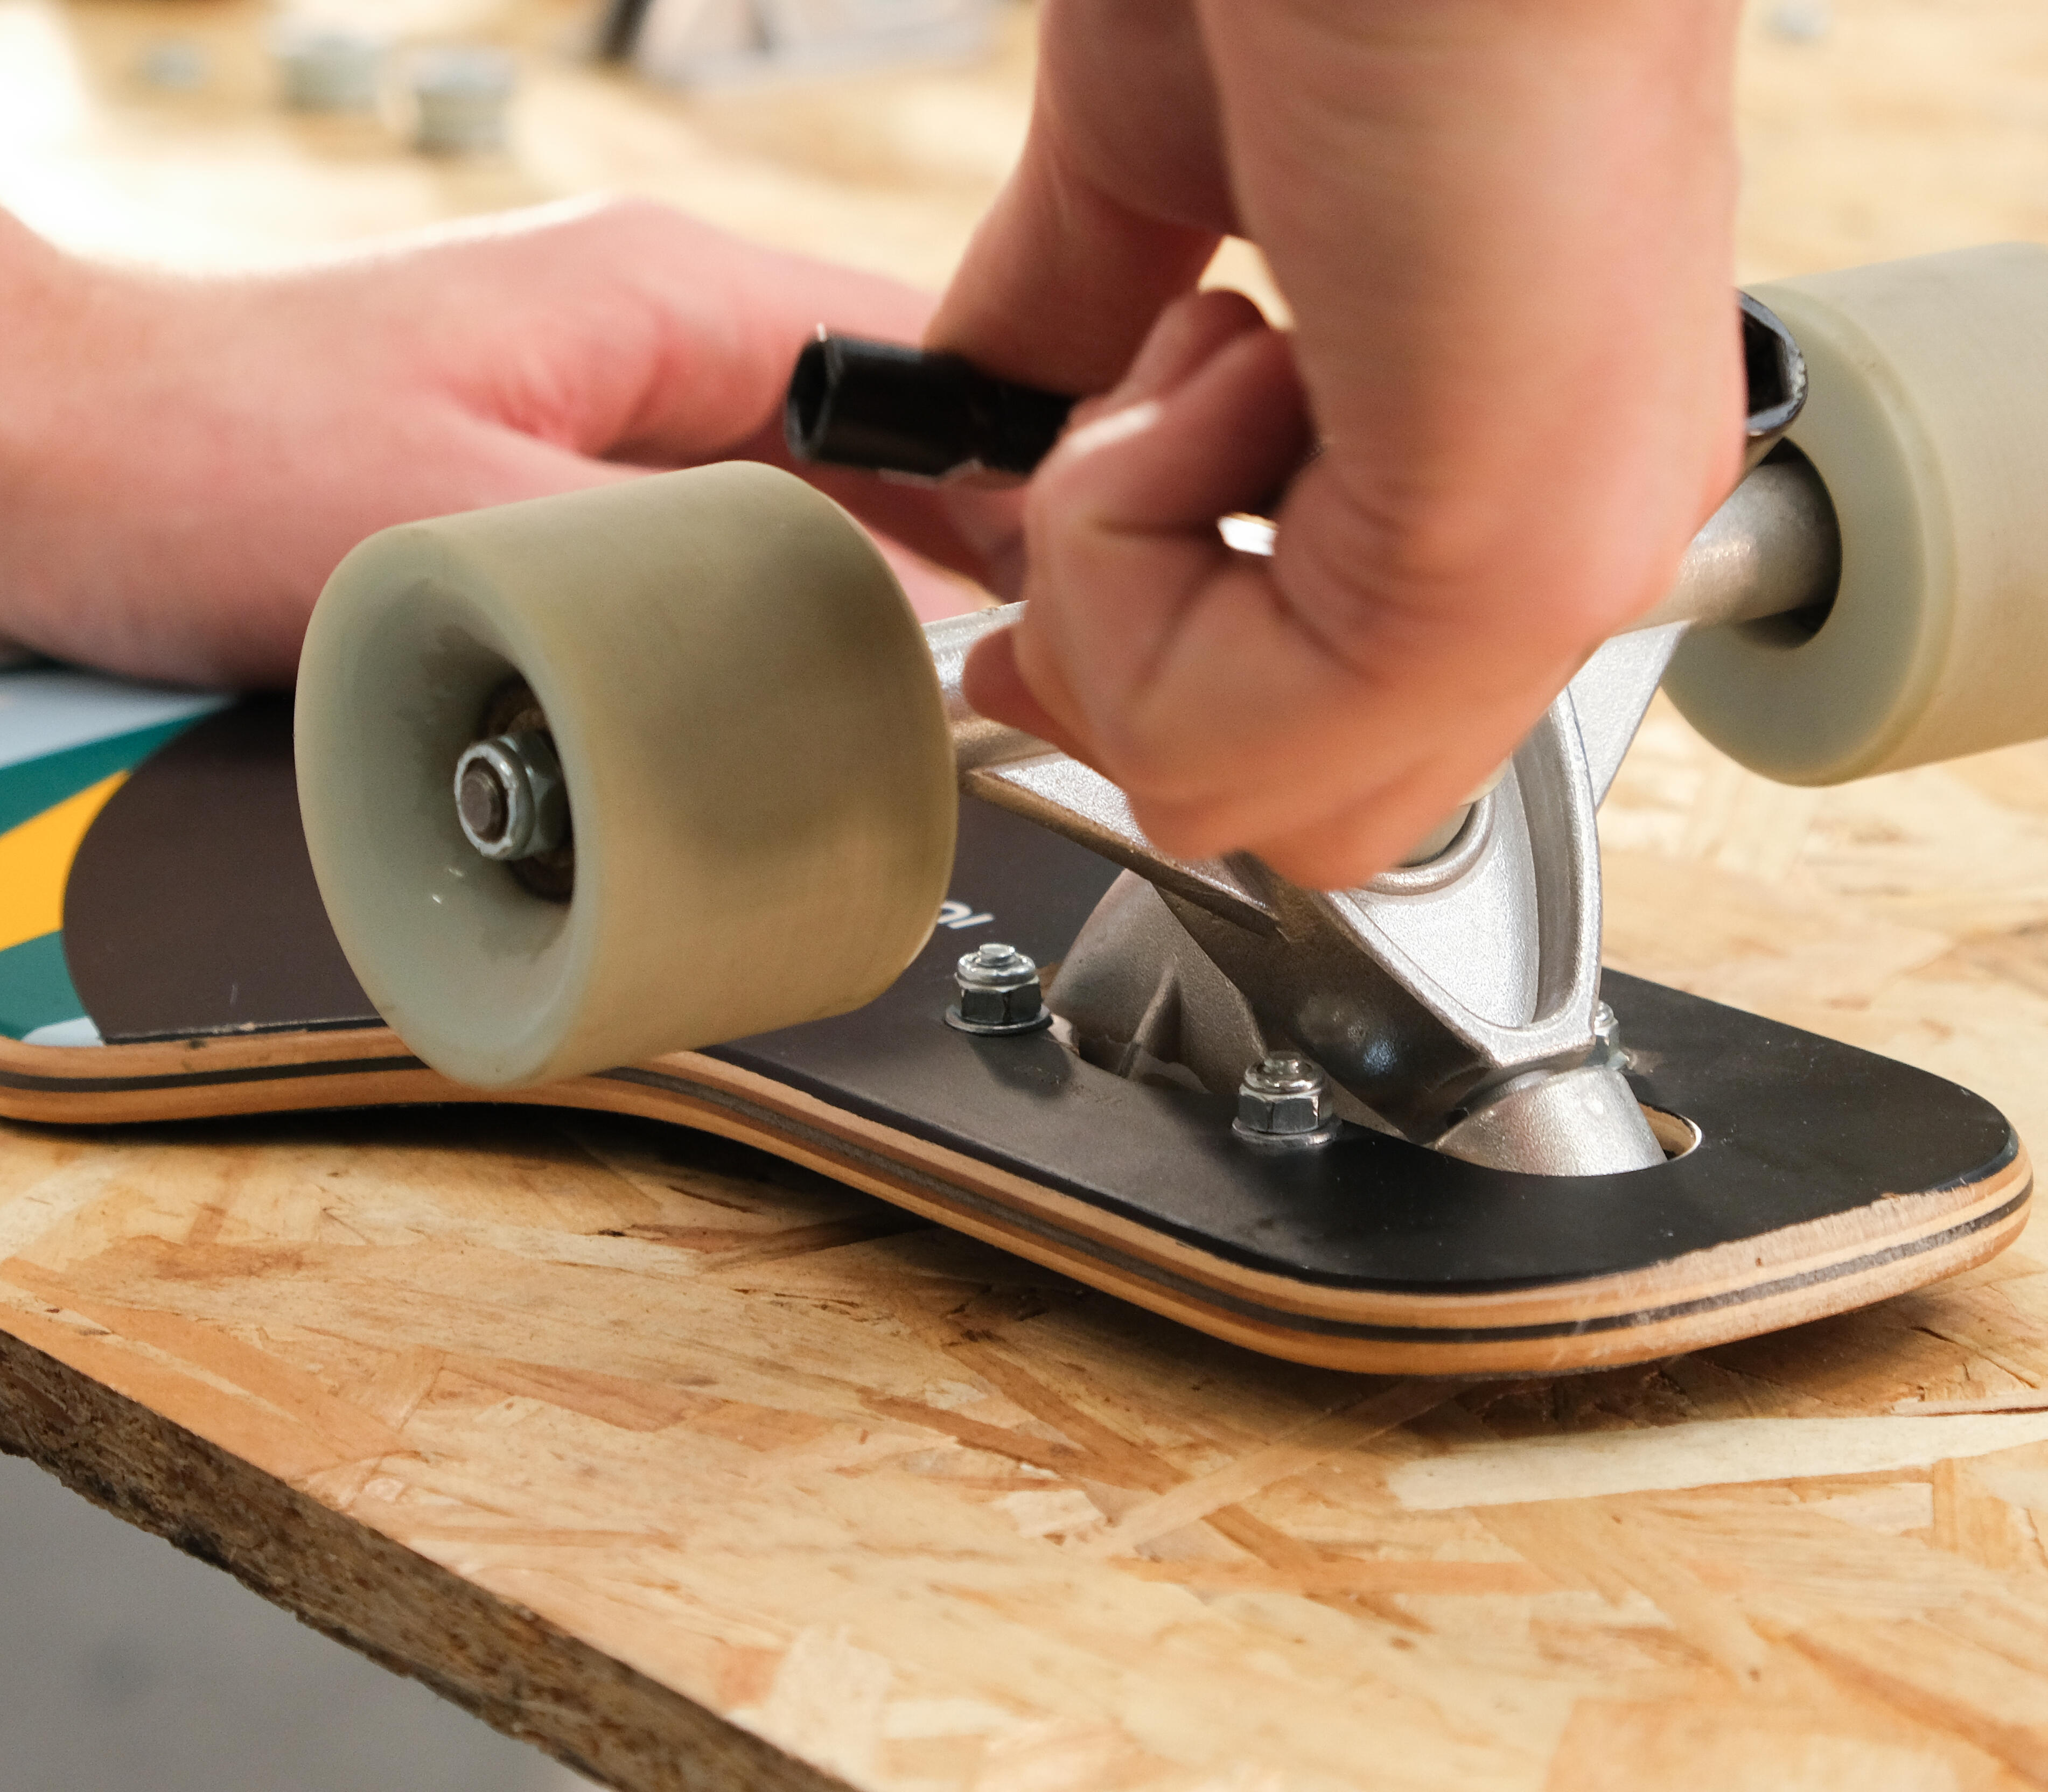 Wsparcie techniczne longboardu Oxelo Surfskate Crusing Carve 540 Bird : Instrukcja obsługi, naprawa